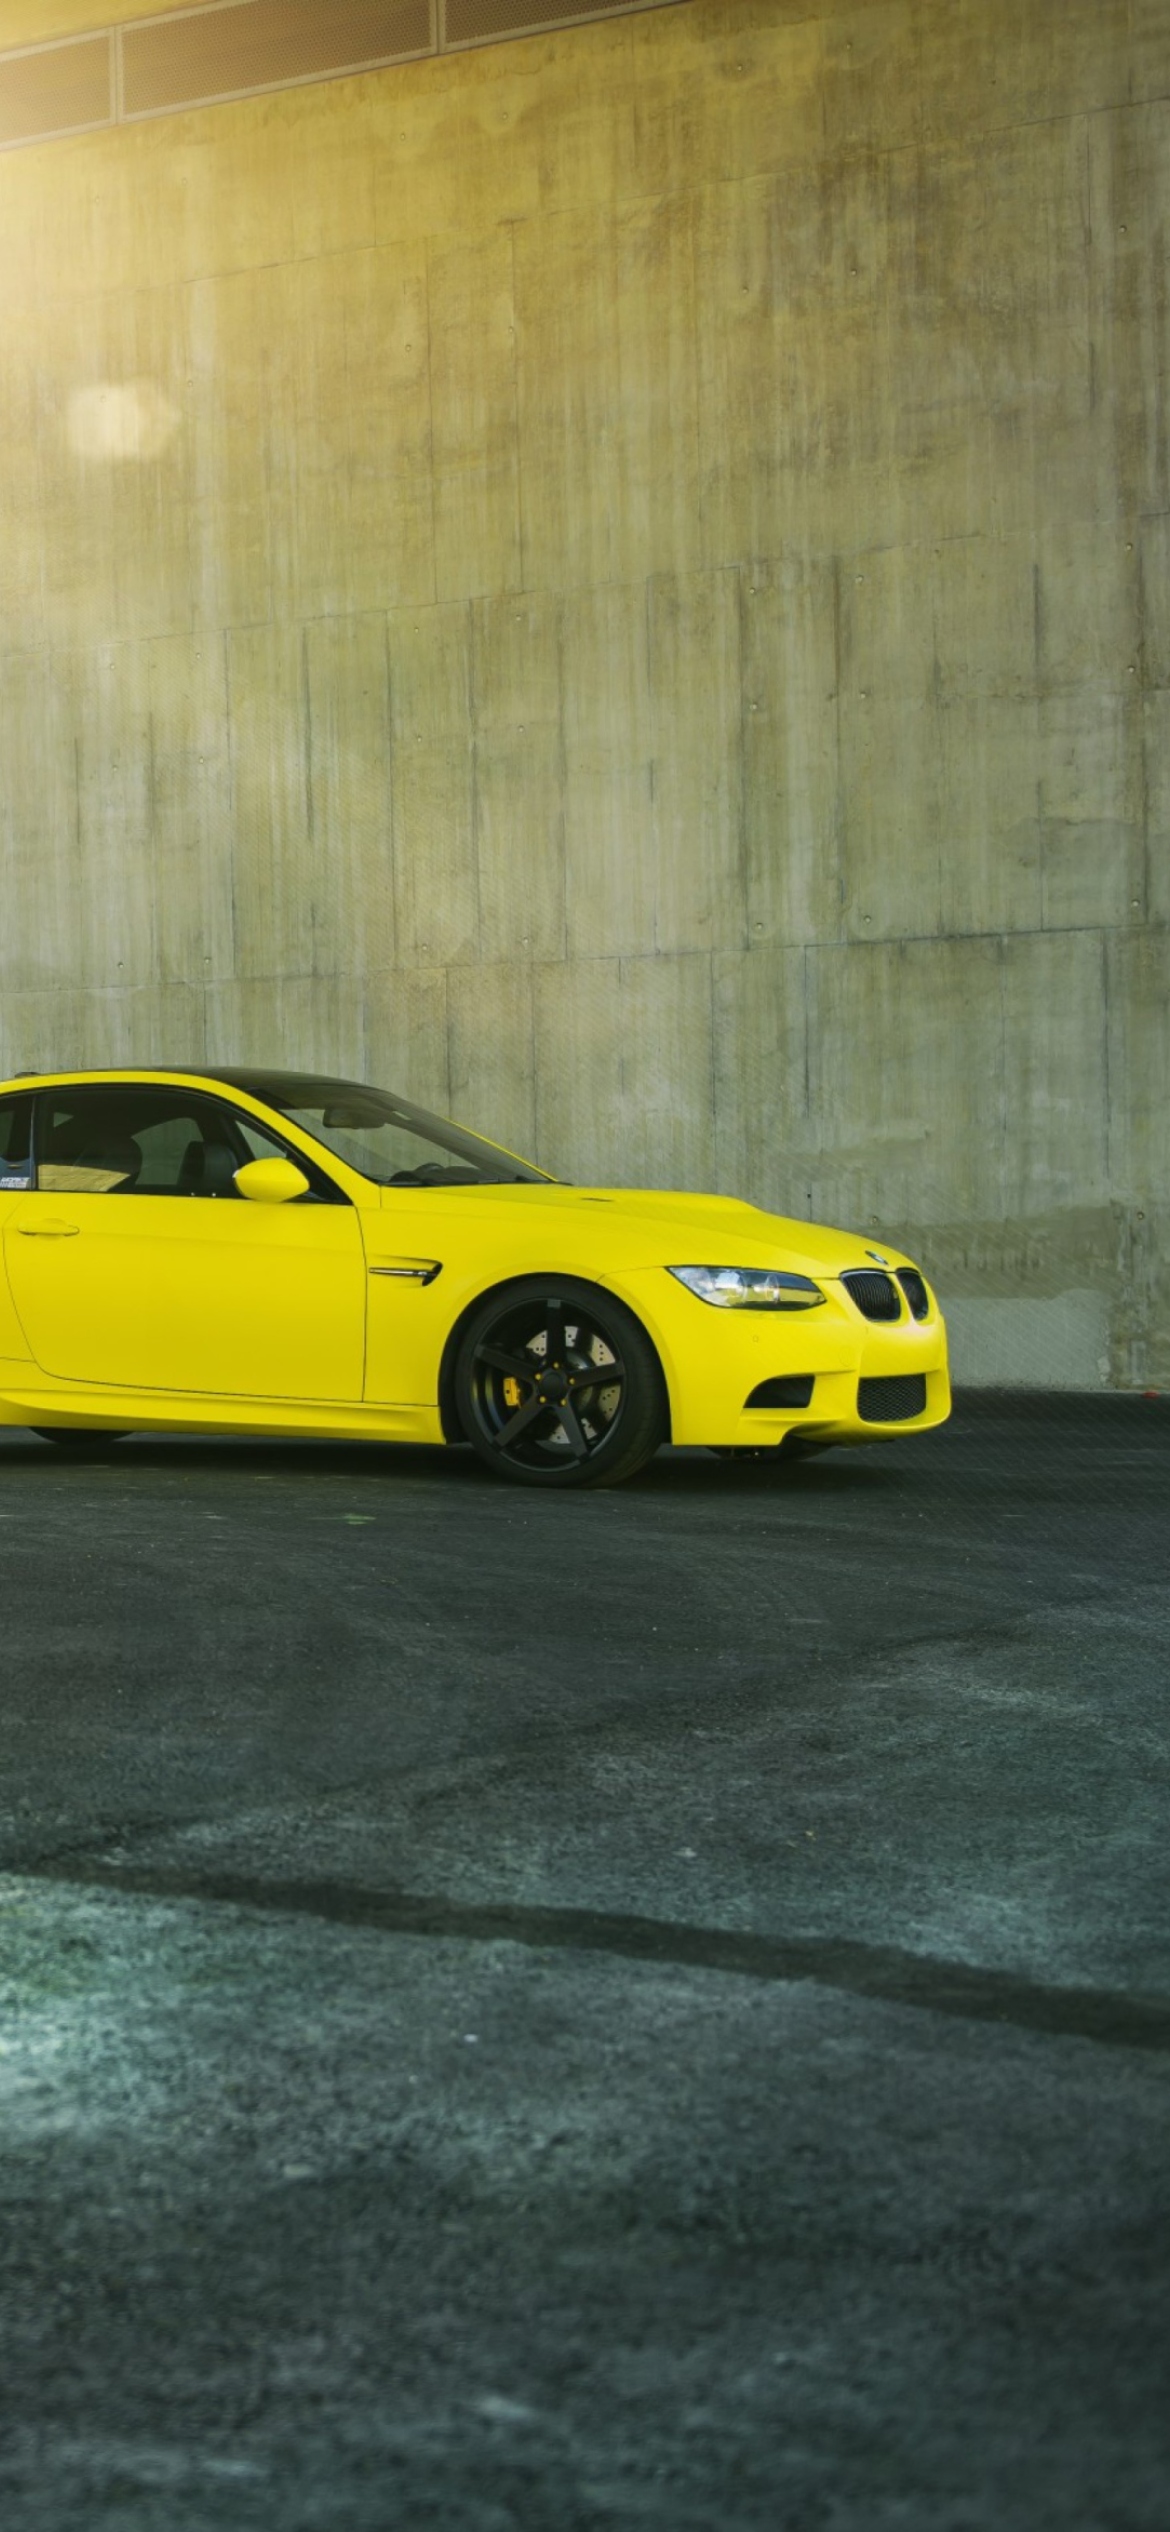 Yellow BMW wallpaper 1170x2532